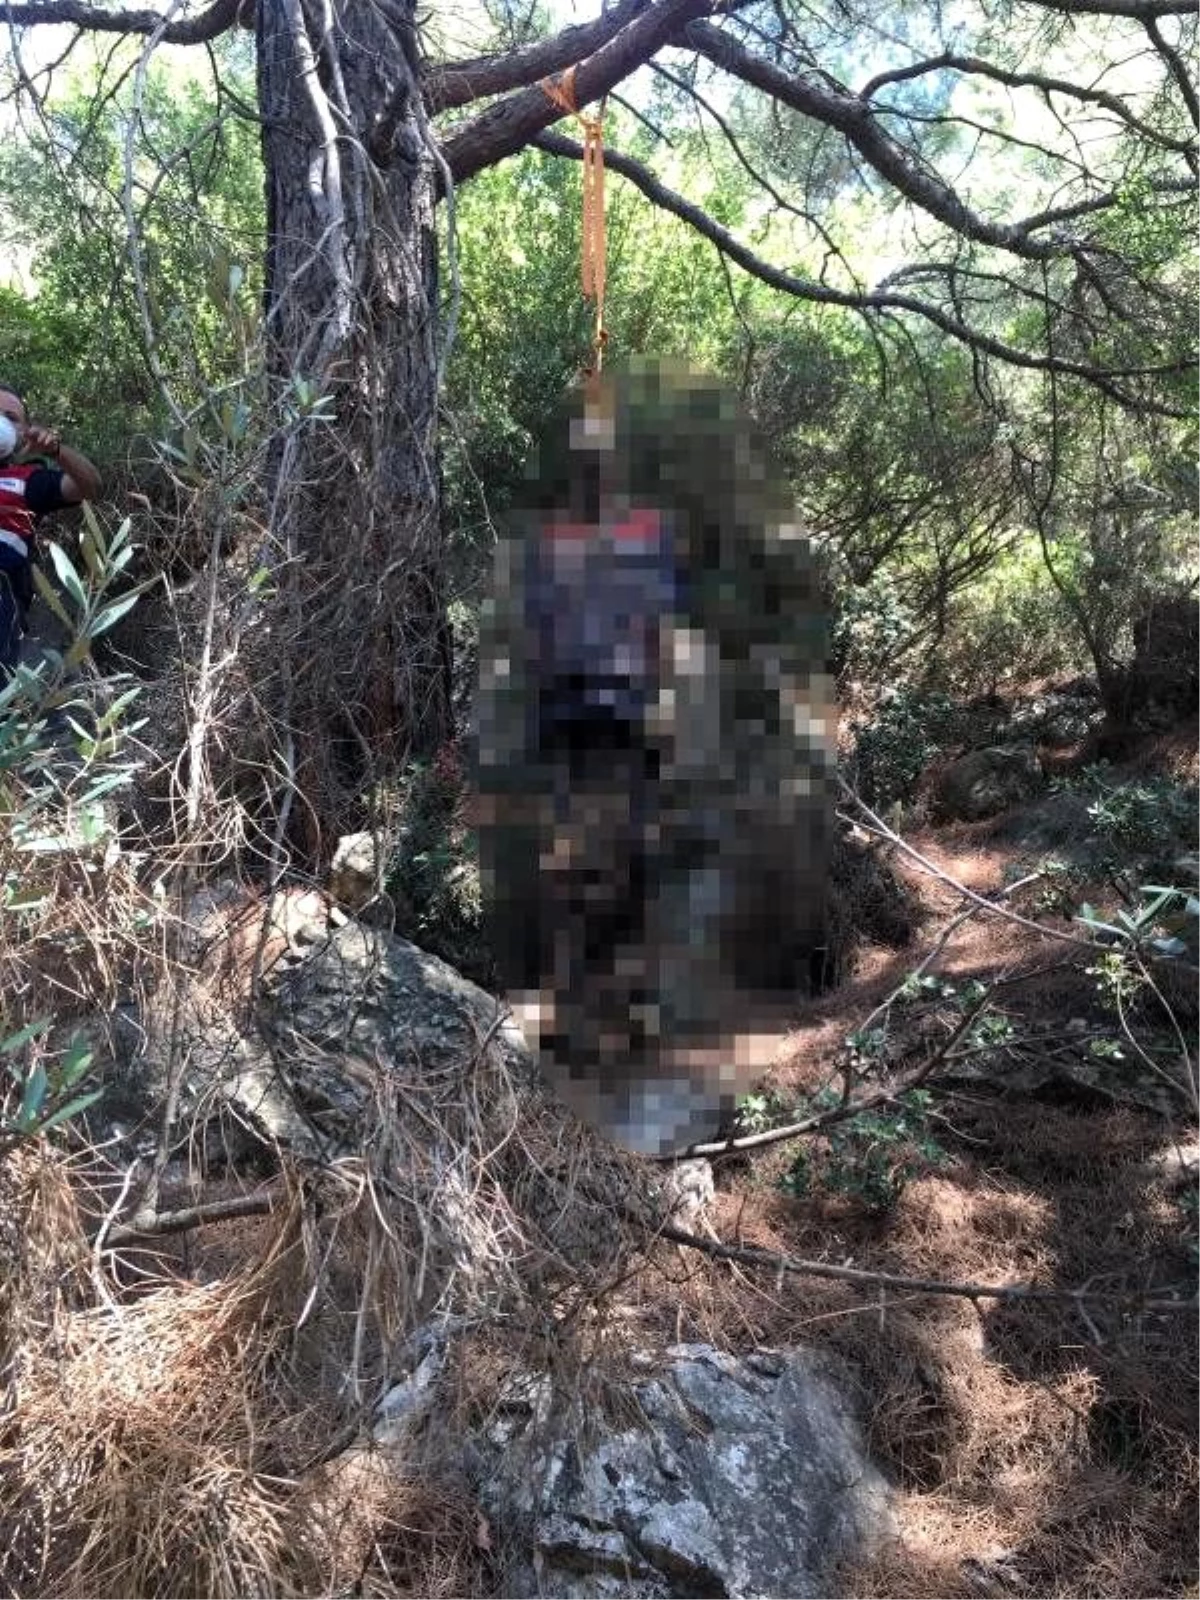 5 aydır kayıp olan kişinin ormanda ağaca asılı cesedi bulundu